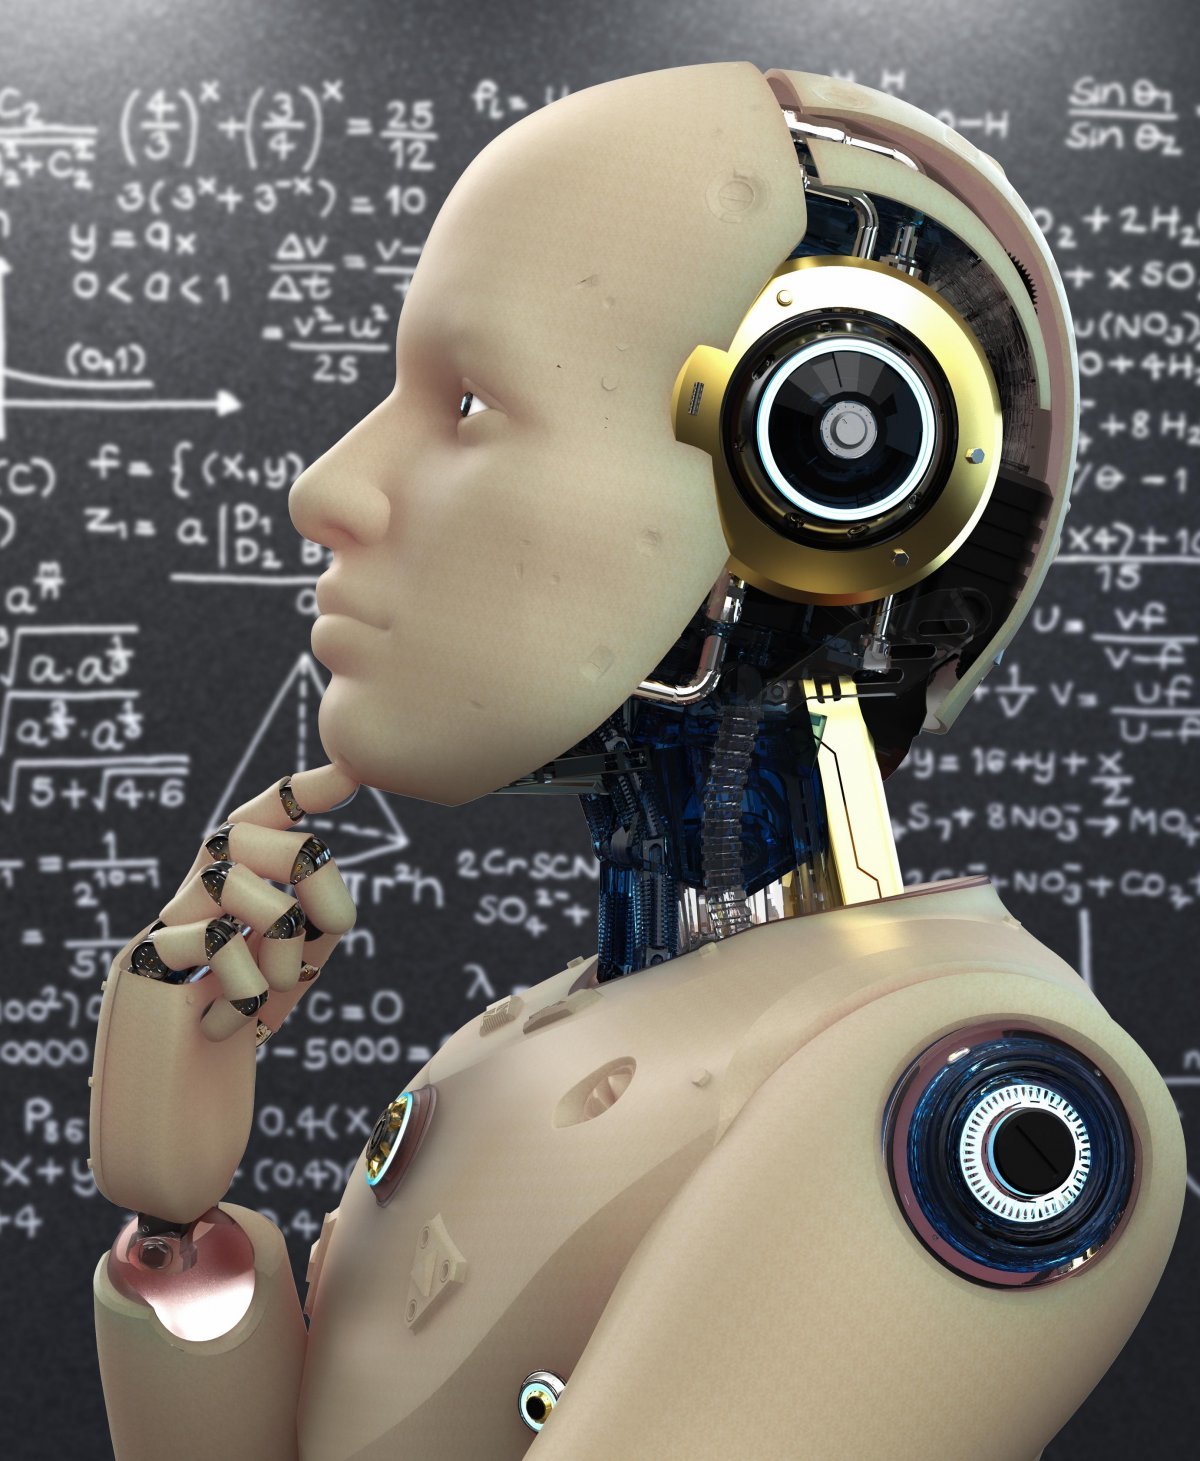 국제수학올림피아드(IMO)에서 금메달을 딸 수 있는 인공지능(AI) 개발이 목표인 AI-MO의 첫 번째 대회가 4월 열렸다. 게티이미지코리아